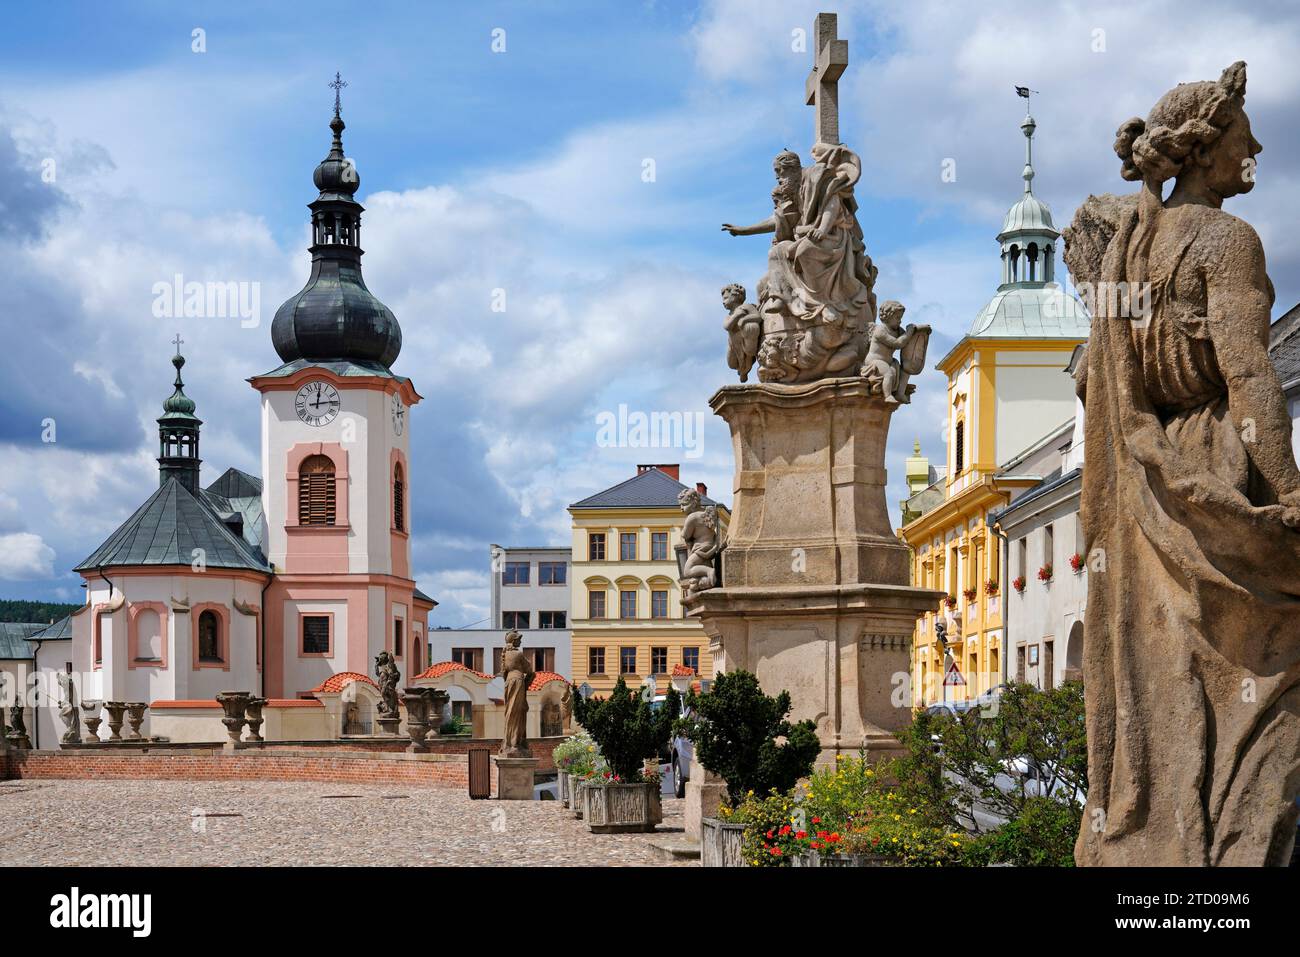 Place avec église baroque, Manetin, région de Pilsen, République tchèque Banque D'Images